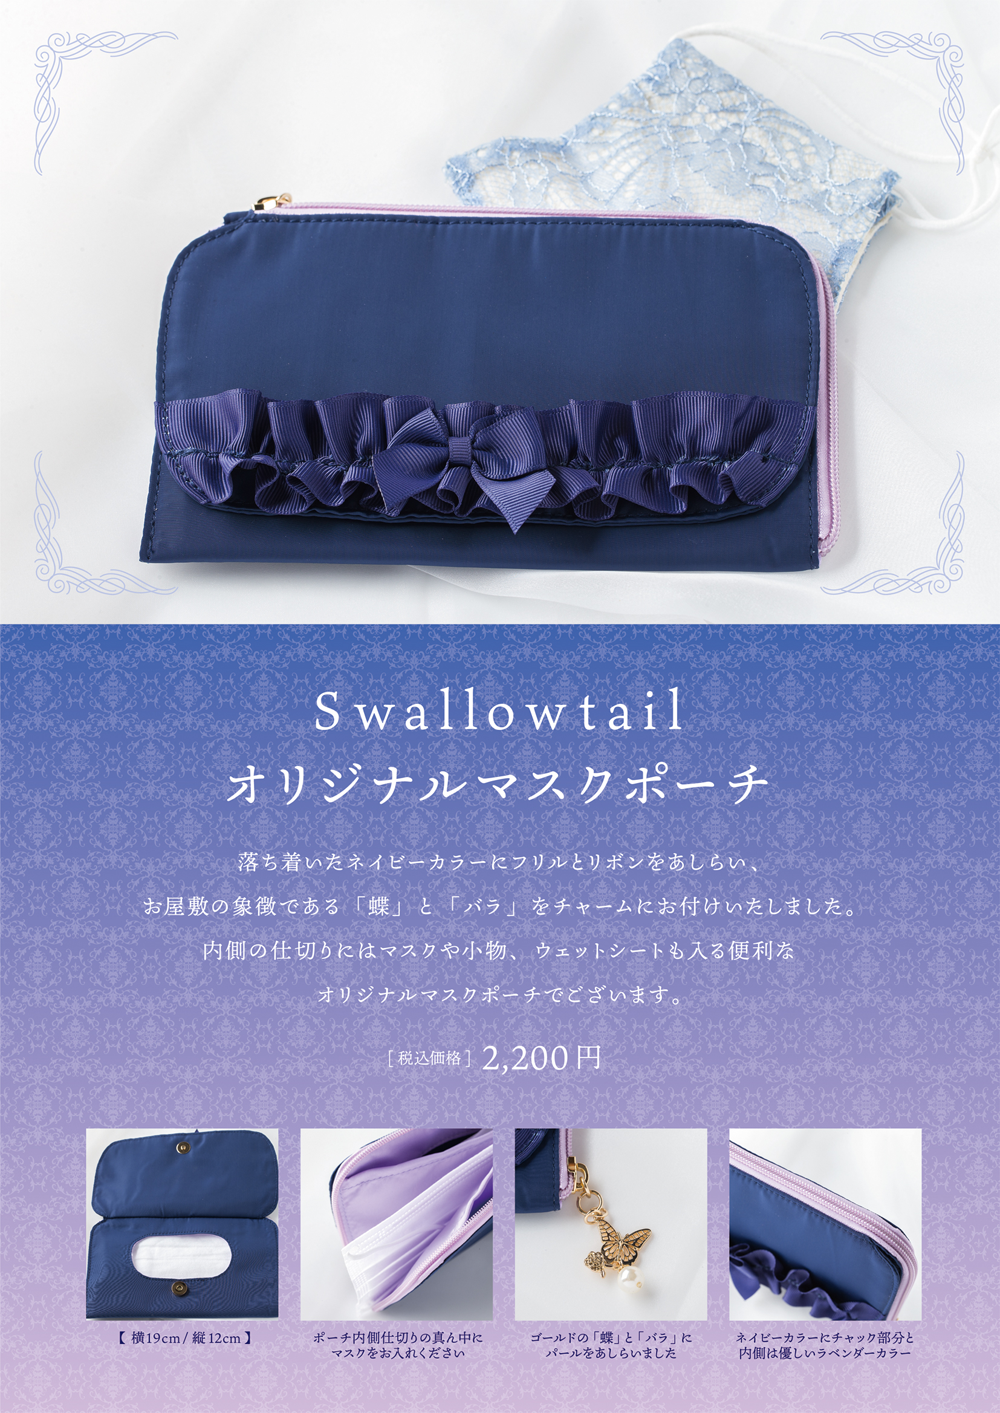 Swallowtailオリジナルマスクポーチ発売のお知らせ